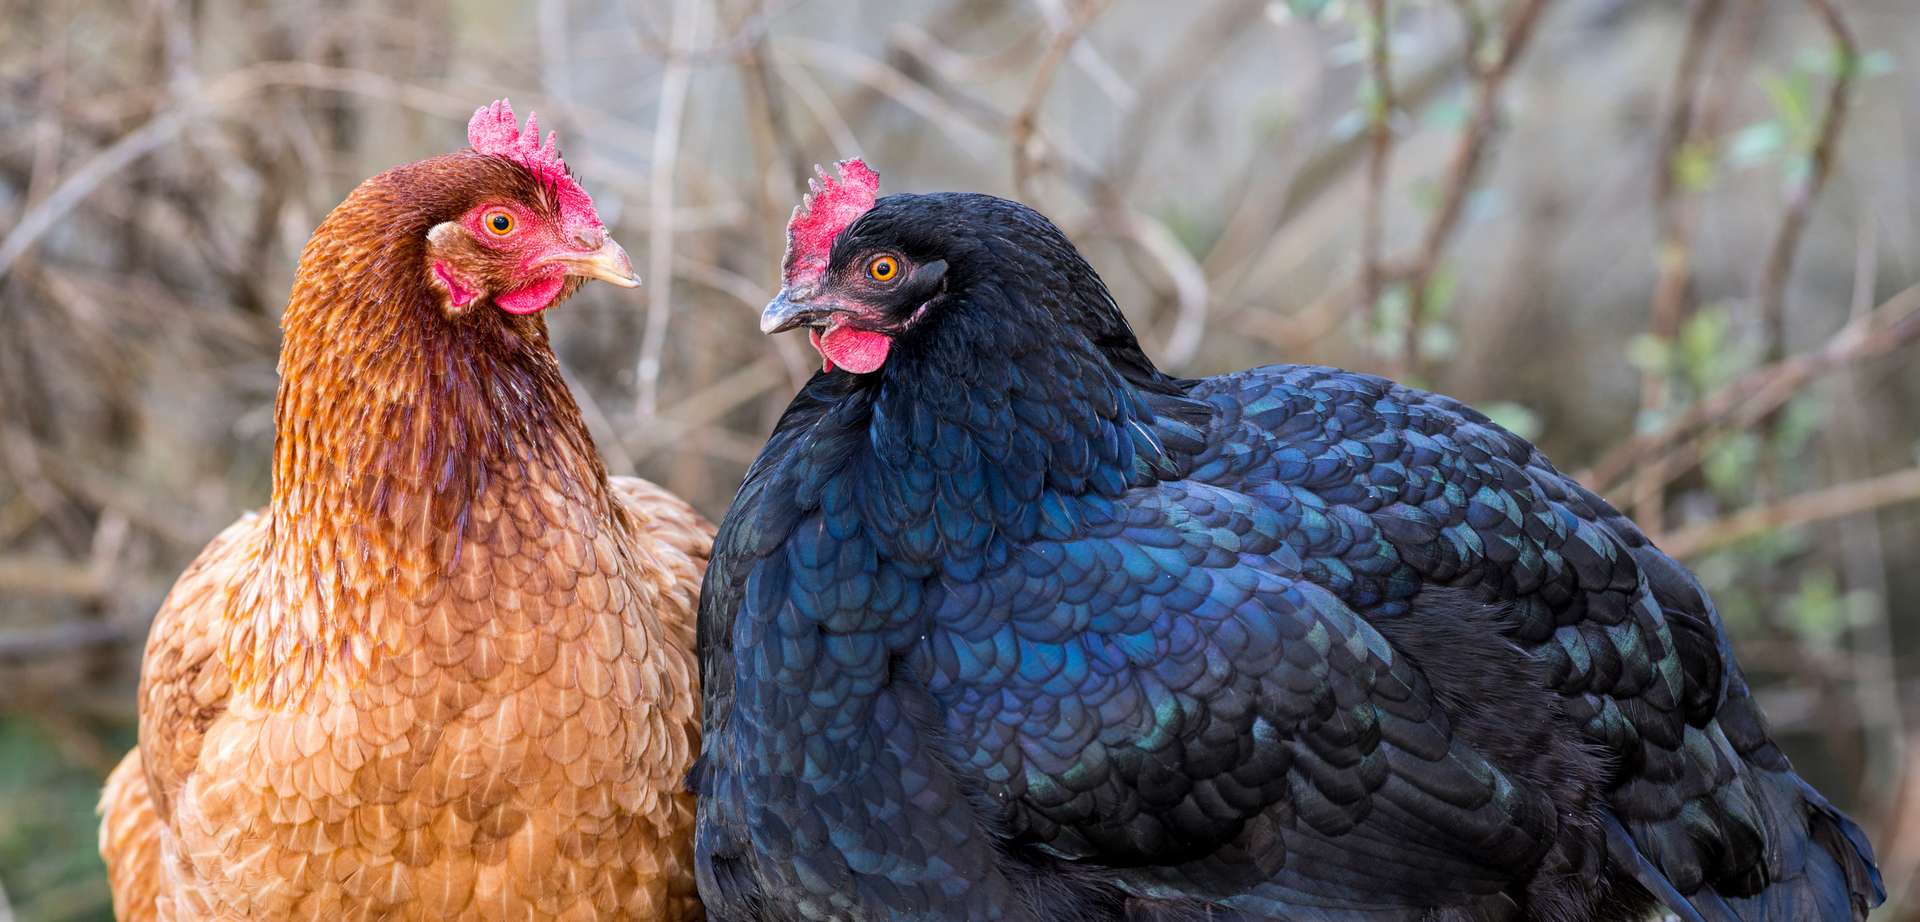 Les poules rougissent d'émotion, et c'est une bonne nouvelle pour le bien-être animal